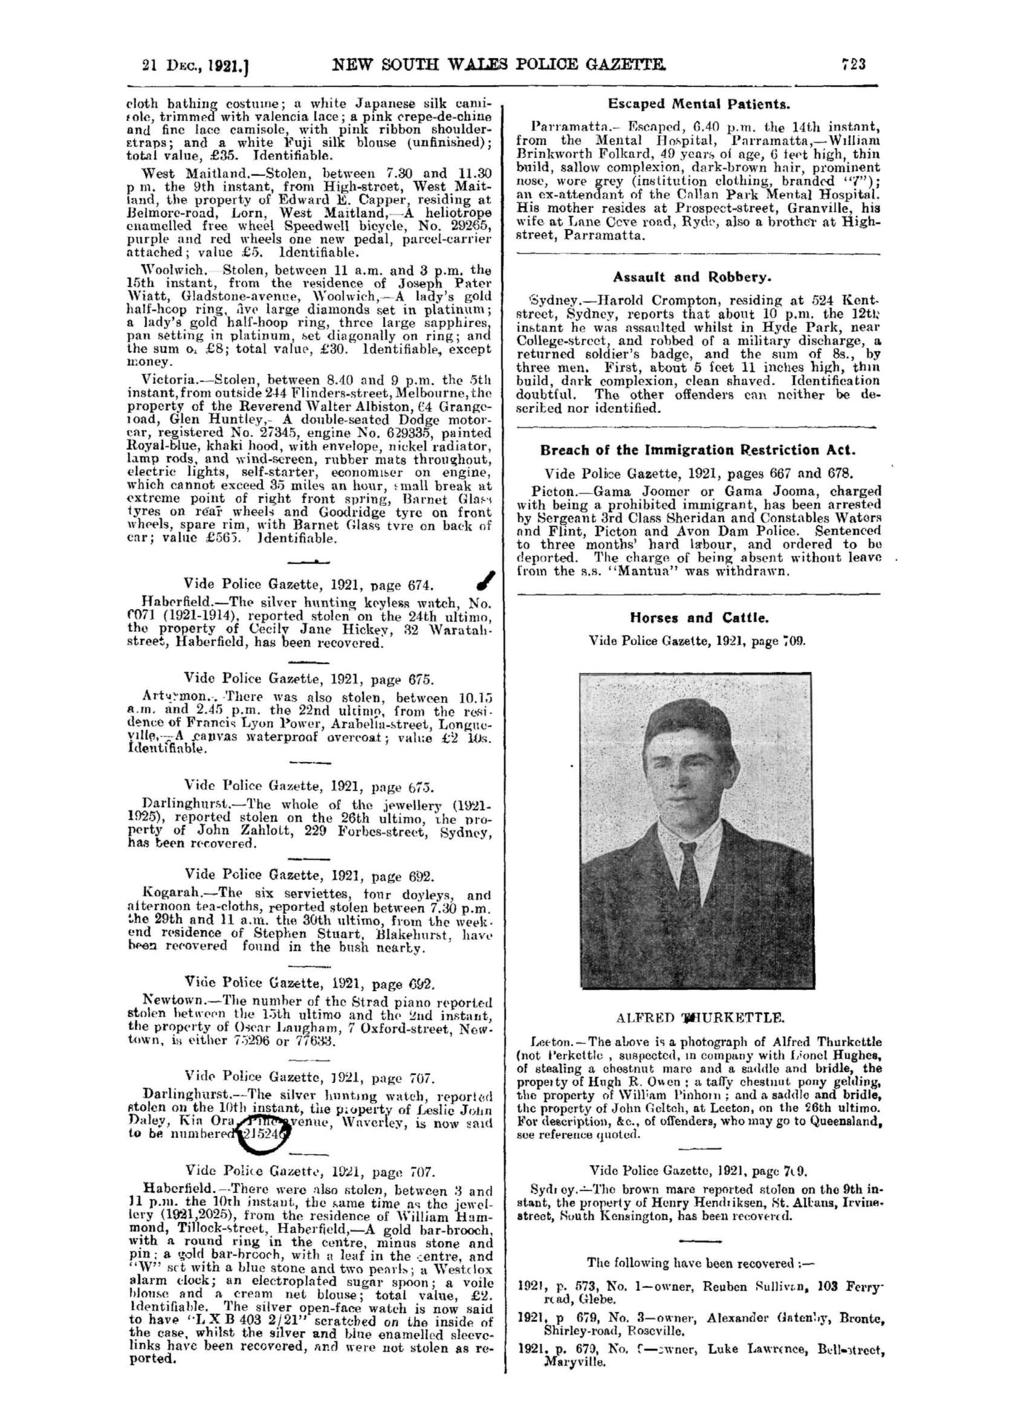 21 DEC., 1921.1 NEW SOUTH WAIFS POLICE GAZETTE.